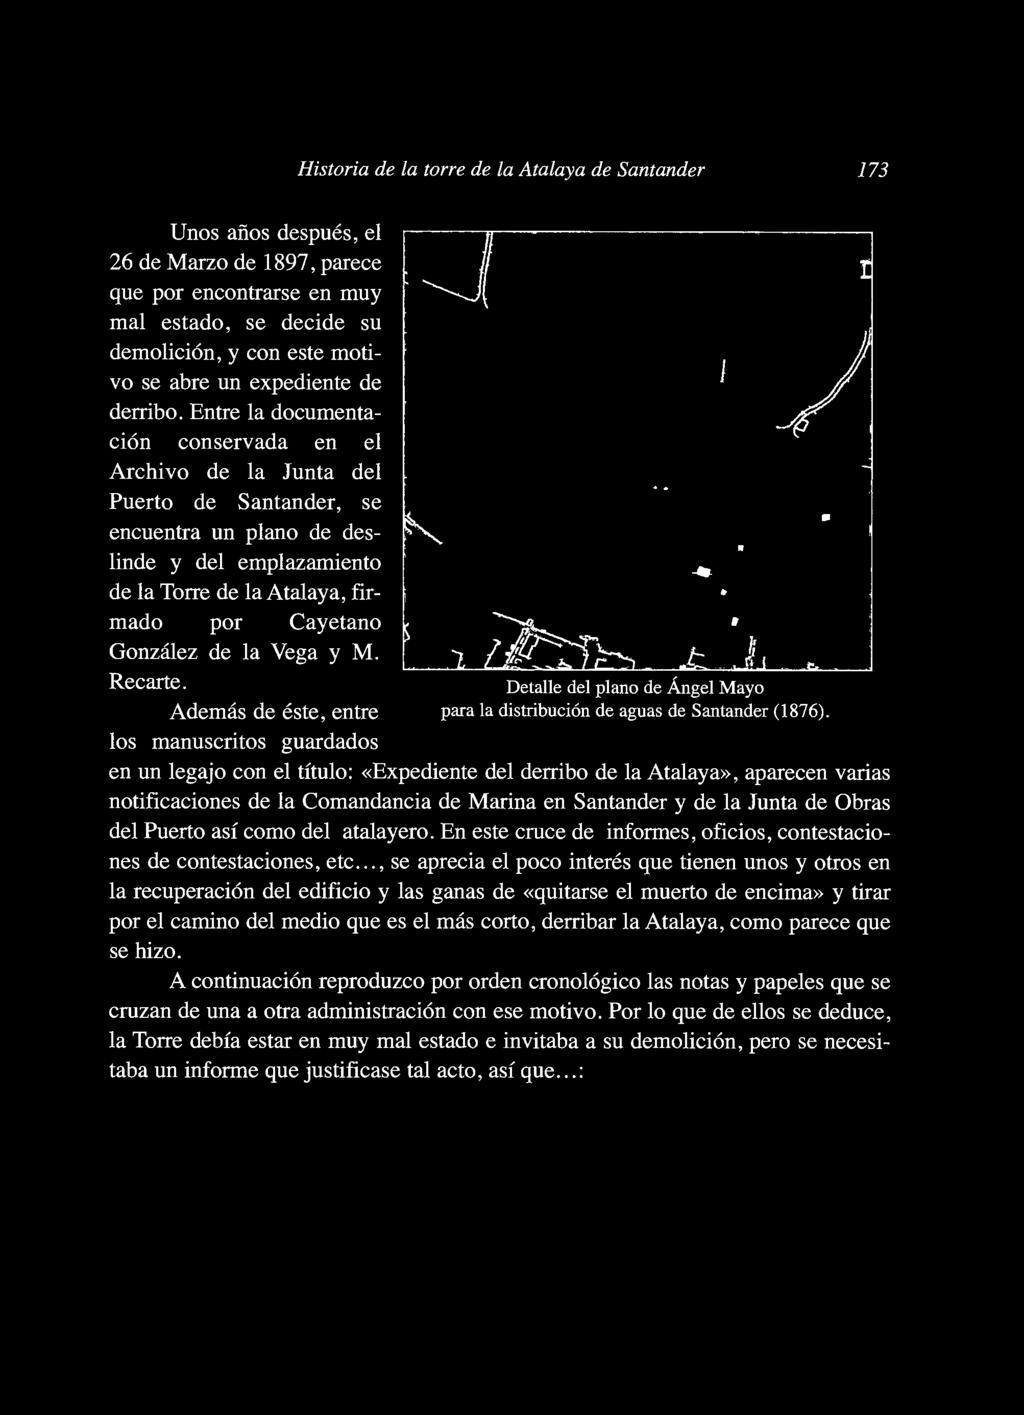 Entre la documentación conservada en el Archivo de la Junta del Puerto de Santander, se encuentra un plano de deslinde y del emplazamiento de la Torre de la Atalaya, firmado por Cayetano González de